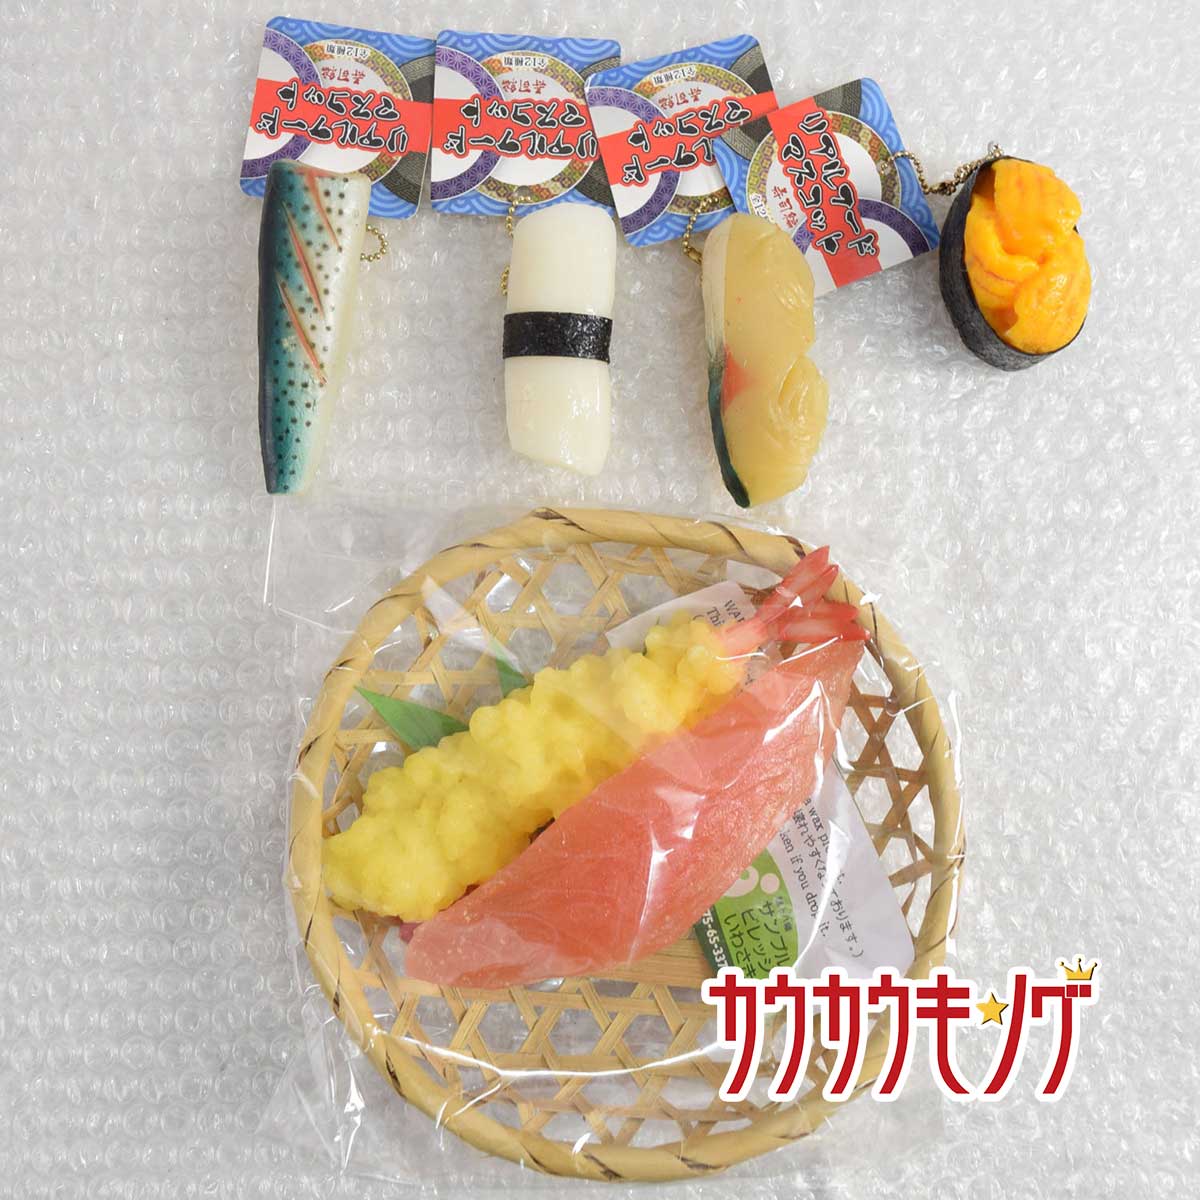 【中古】食品サンプル 天ぷら/マグロ 寿司 キーホルダー まとめ セット